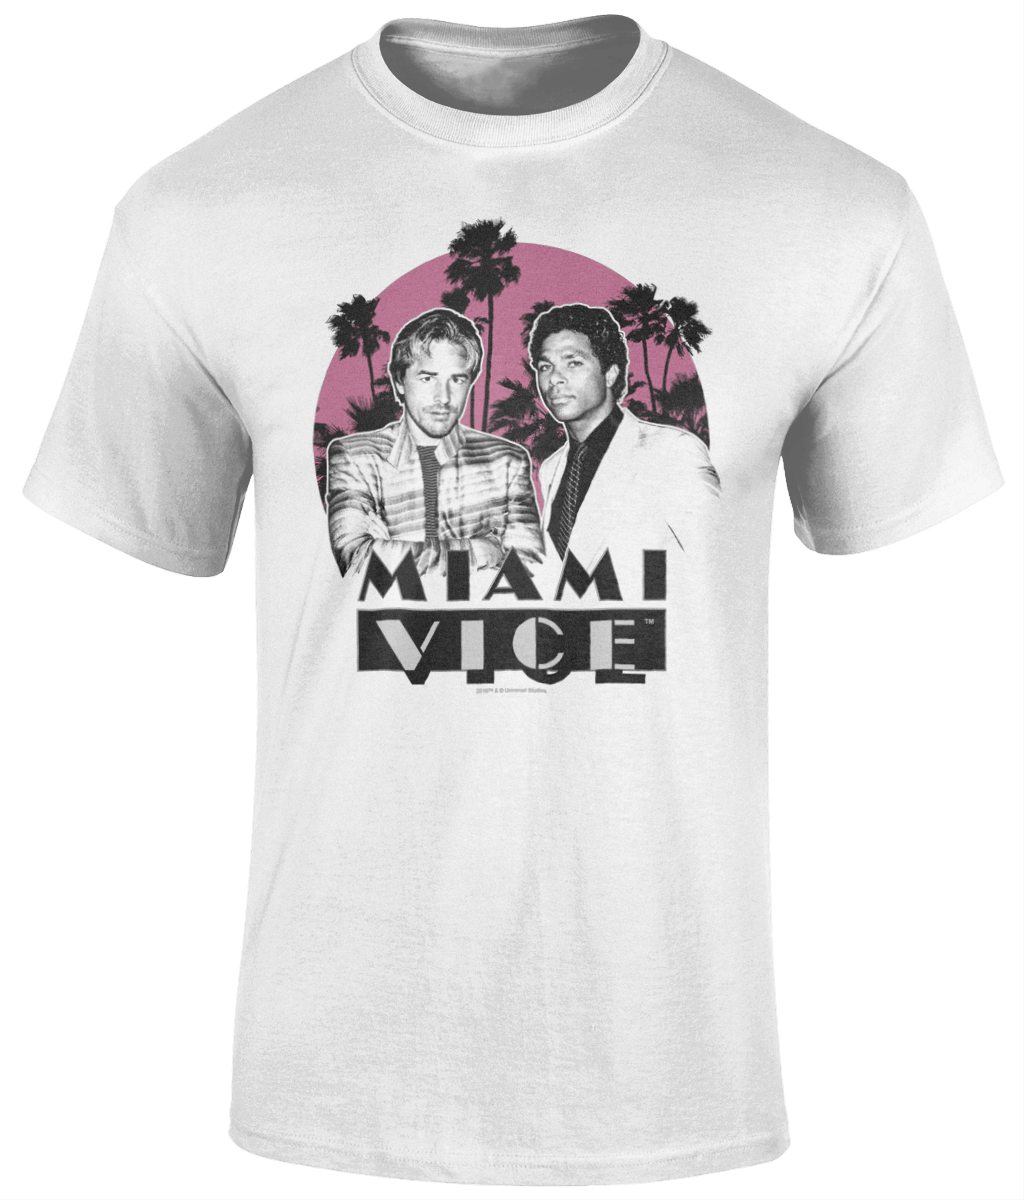 Miami Vice (4) - Colourmagic.gr